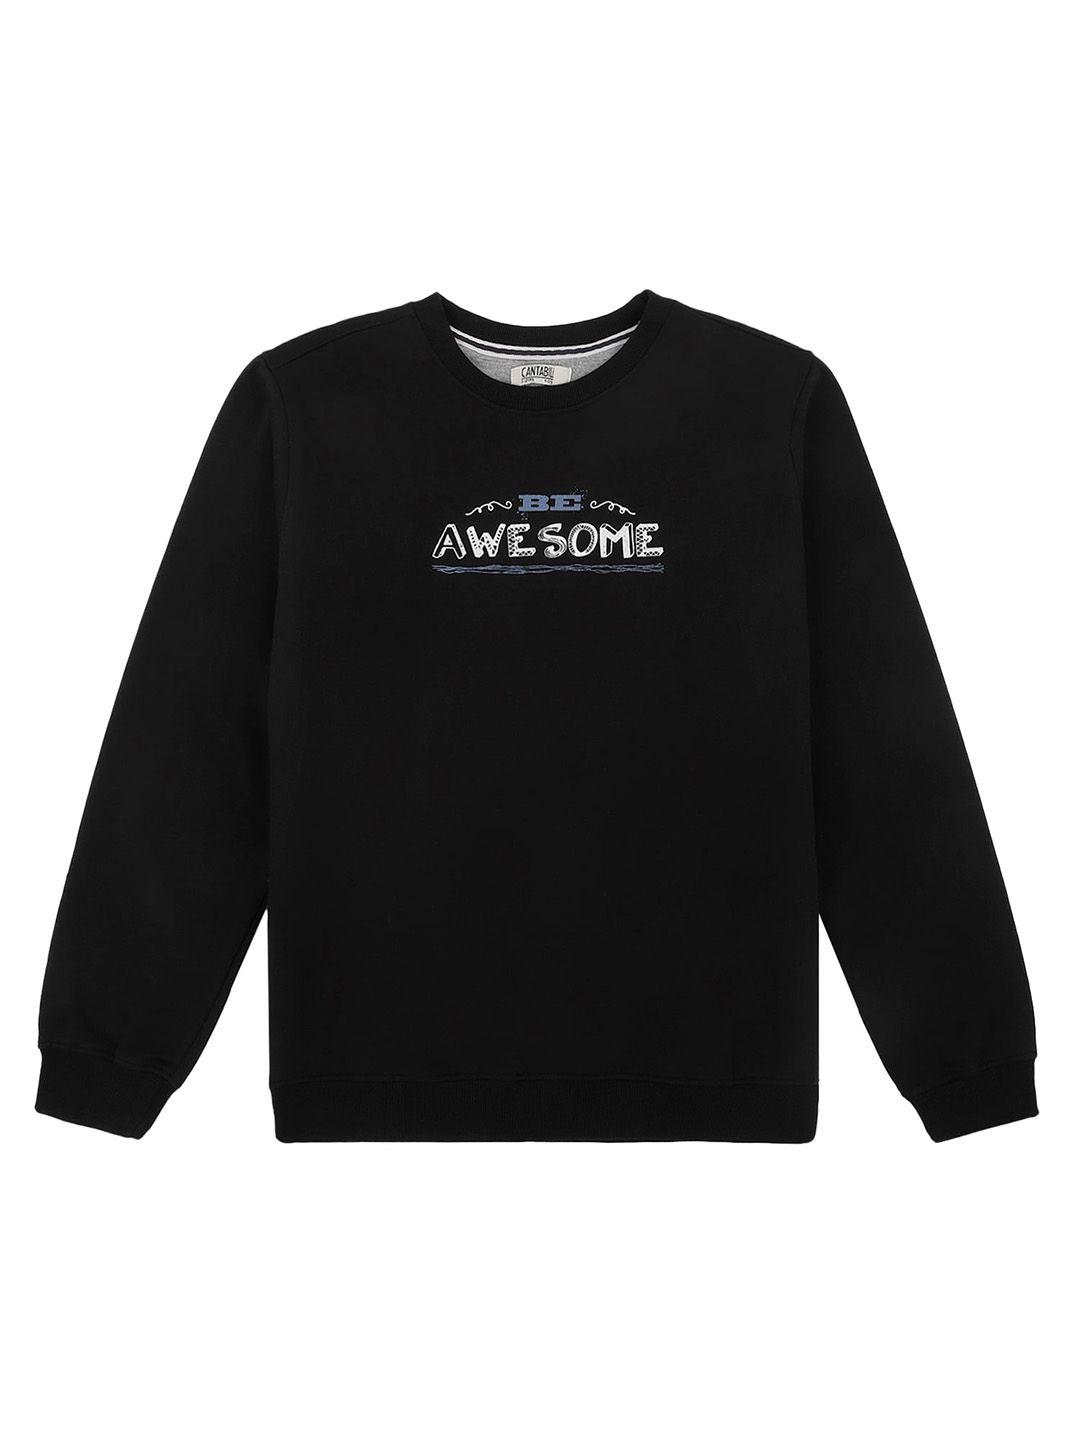 cantabil boys typography printed fleece sweatshirt